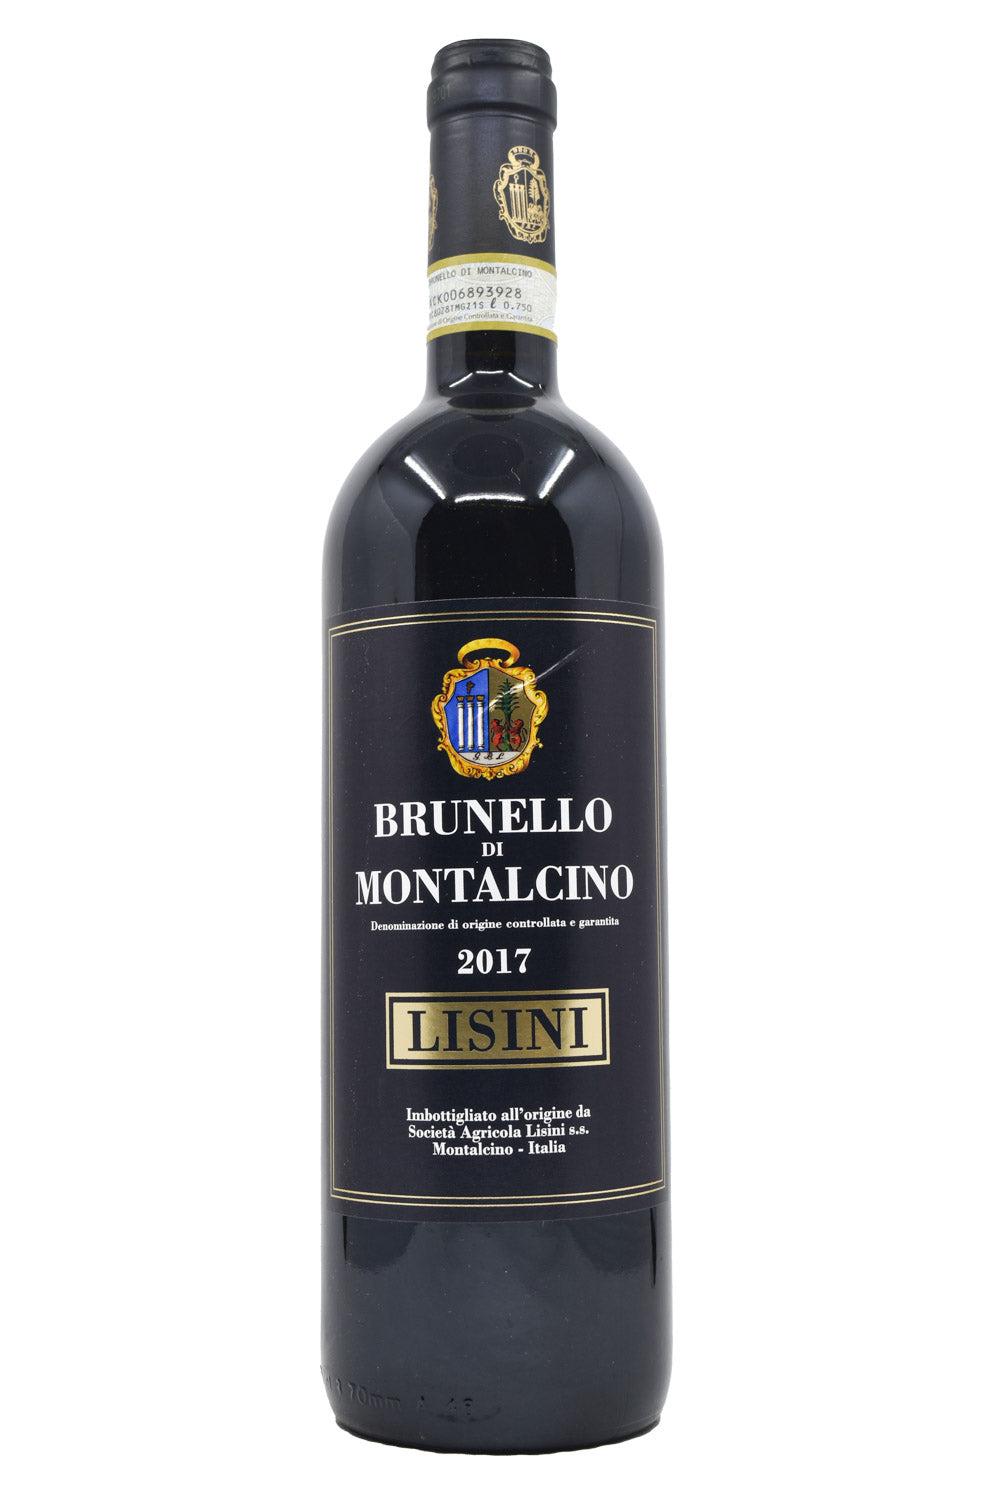 Lisini Brunello di Montalcino 2017 / 750 ml.